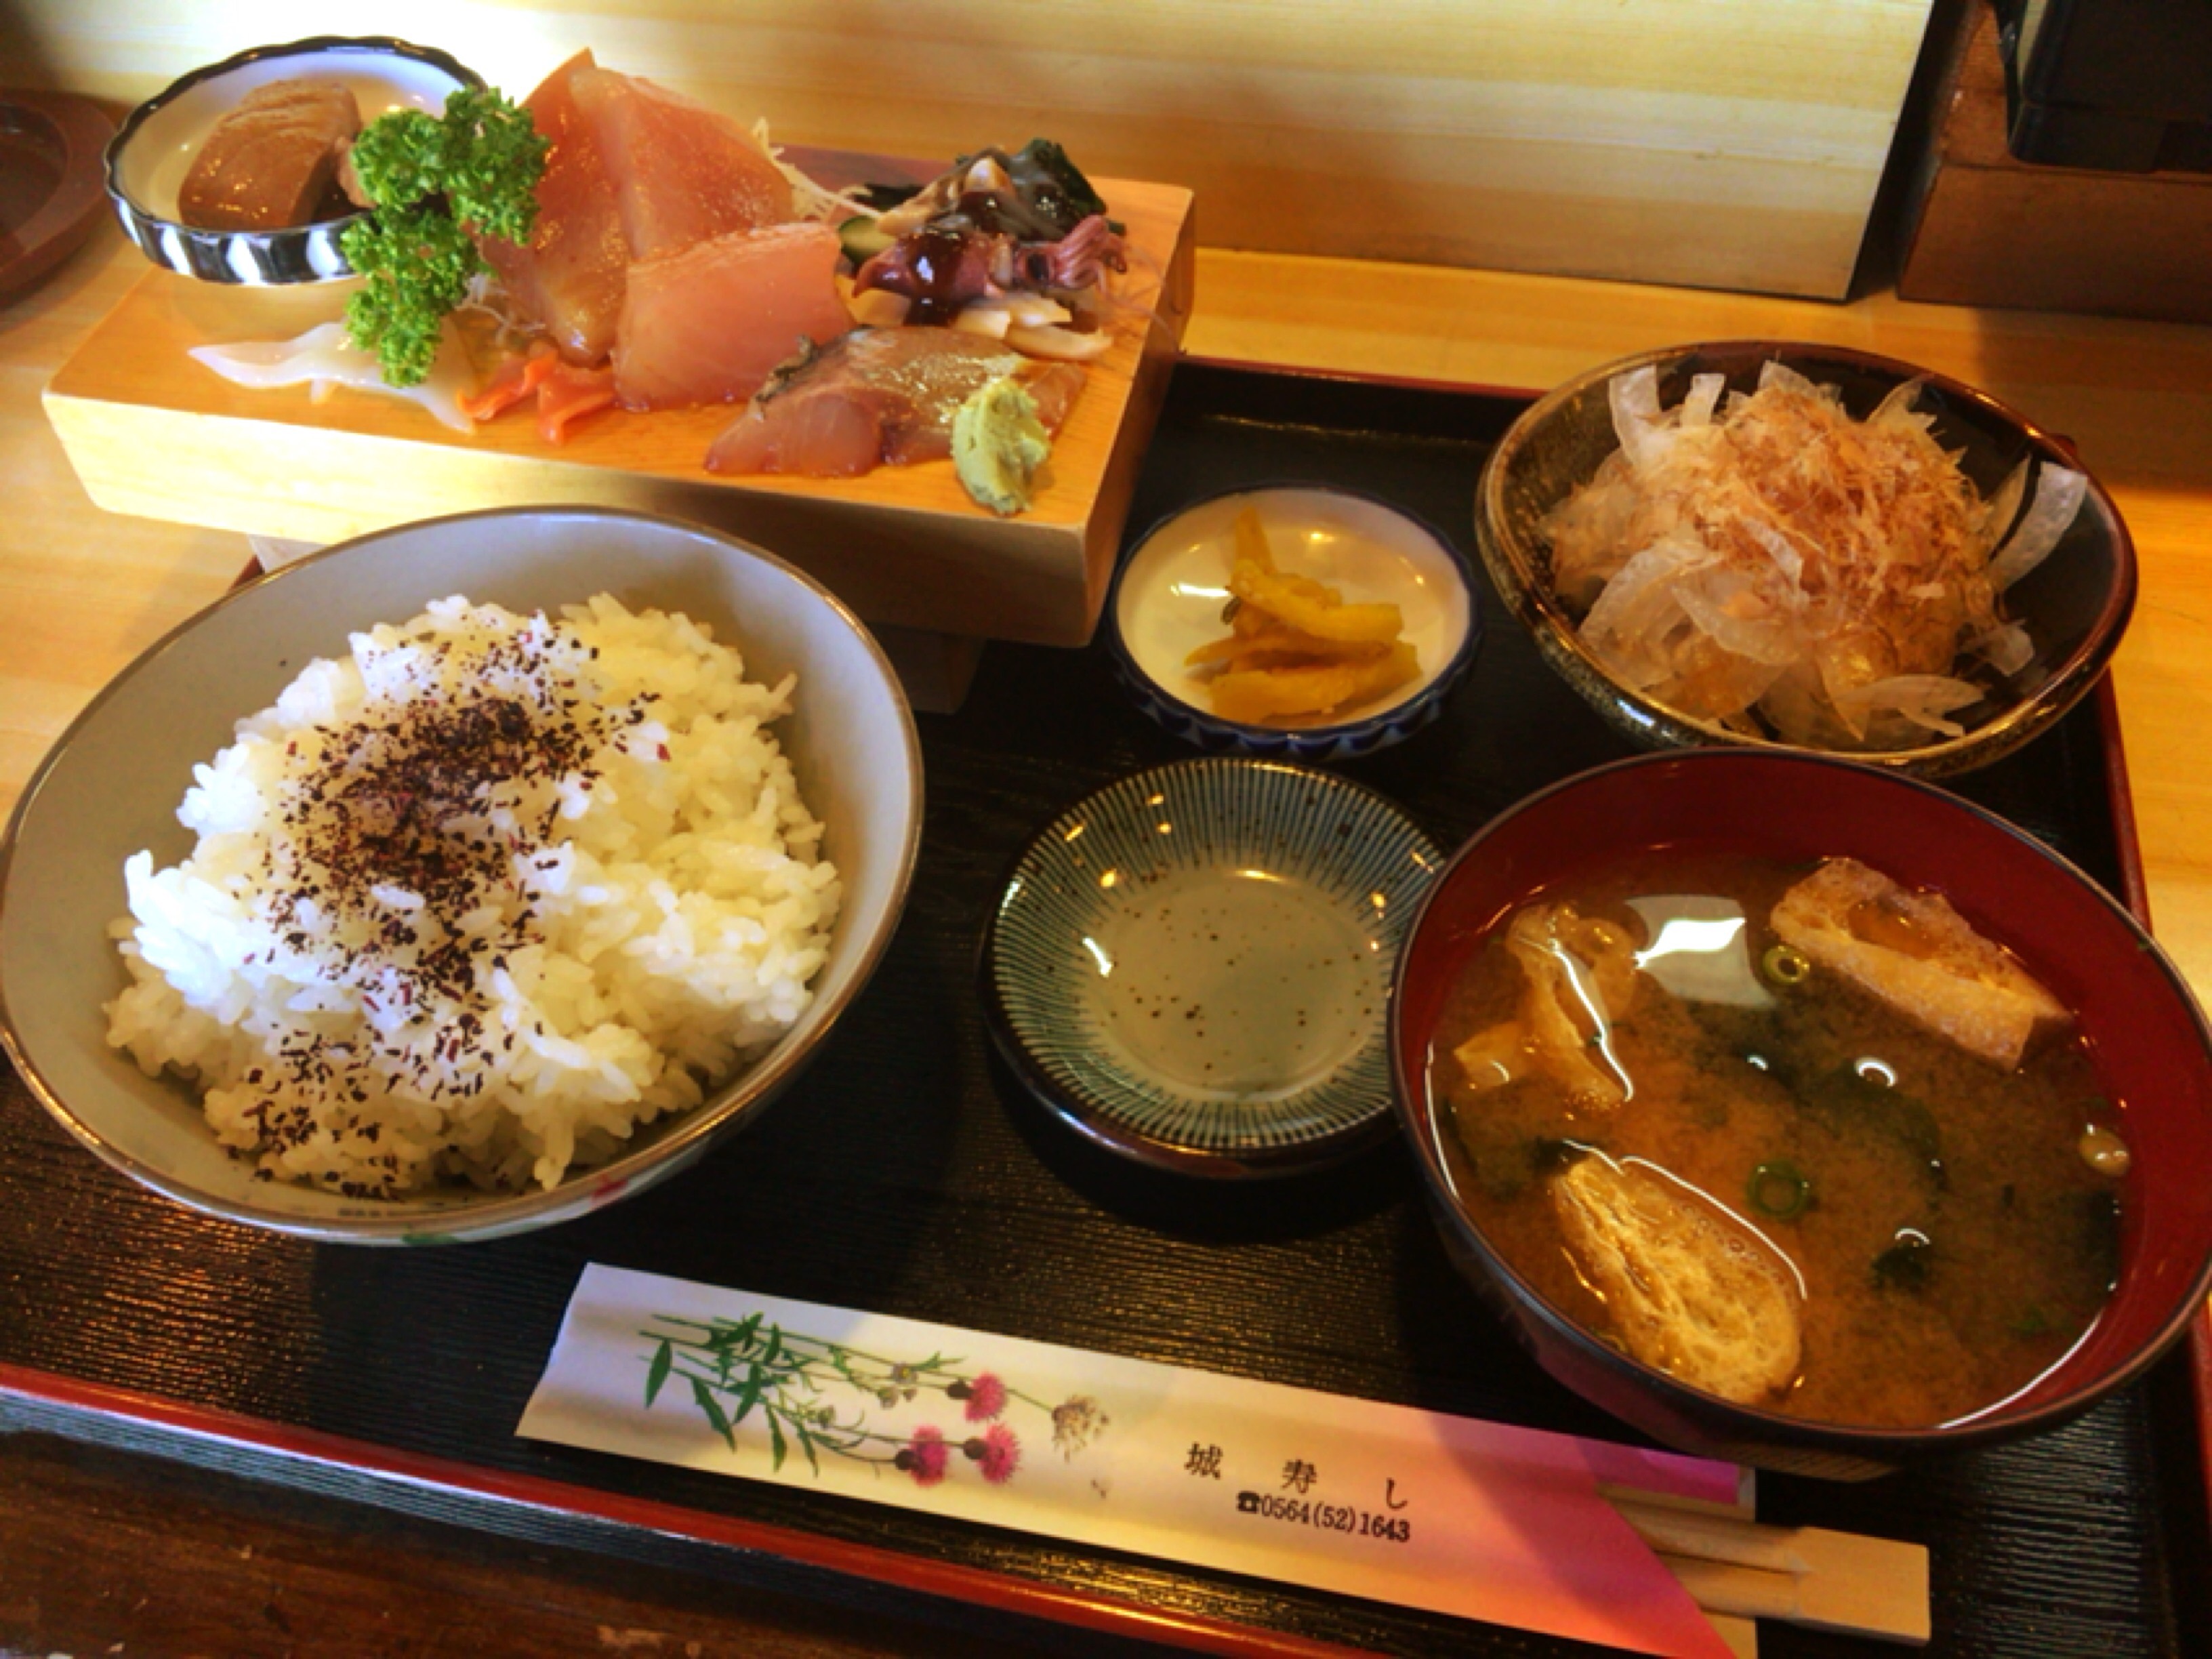 岡崎の城寿司 ランチの刺身定食が650円 コスパが良く美味しいのでおすすめ 岡崎にゅーす